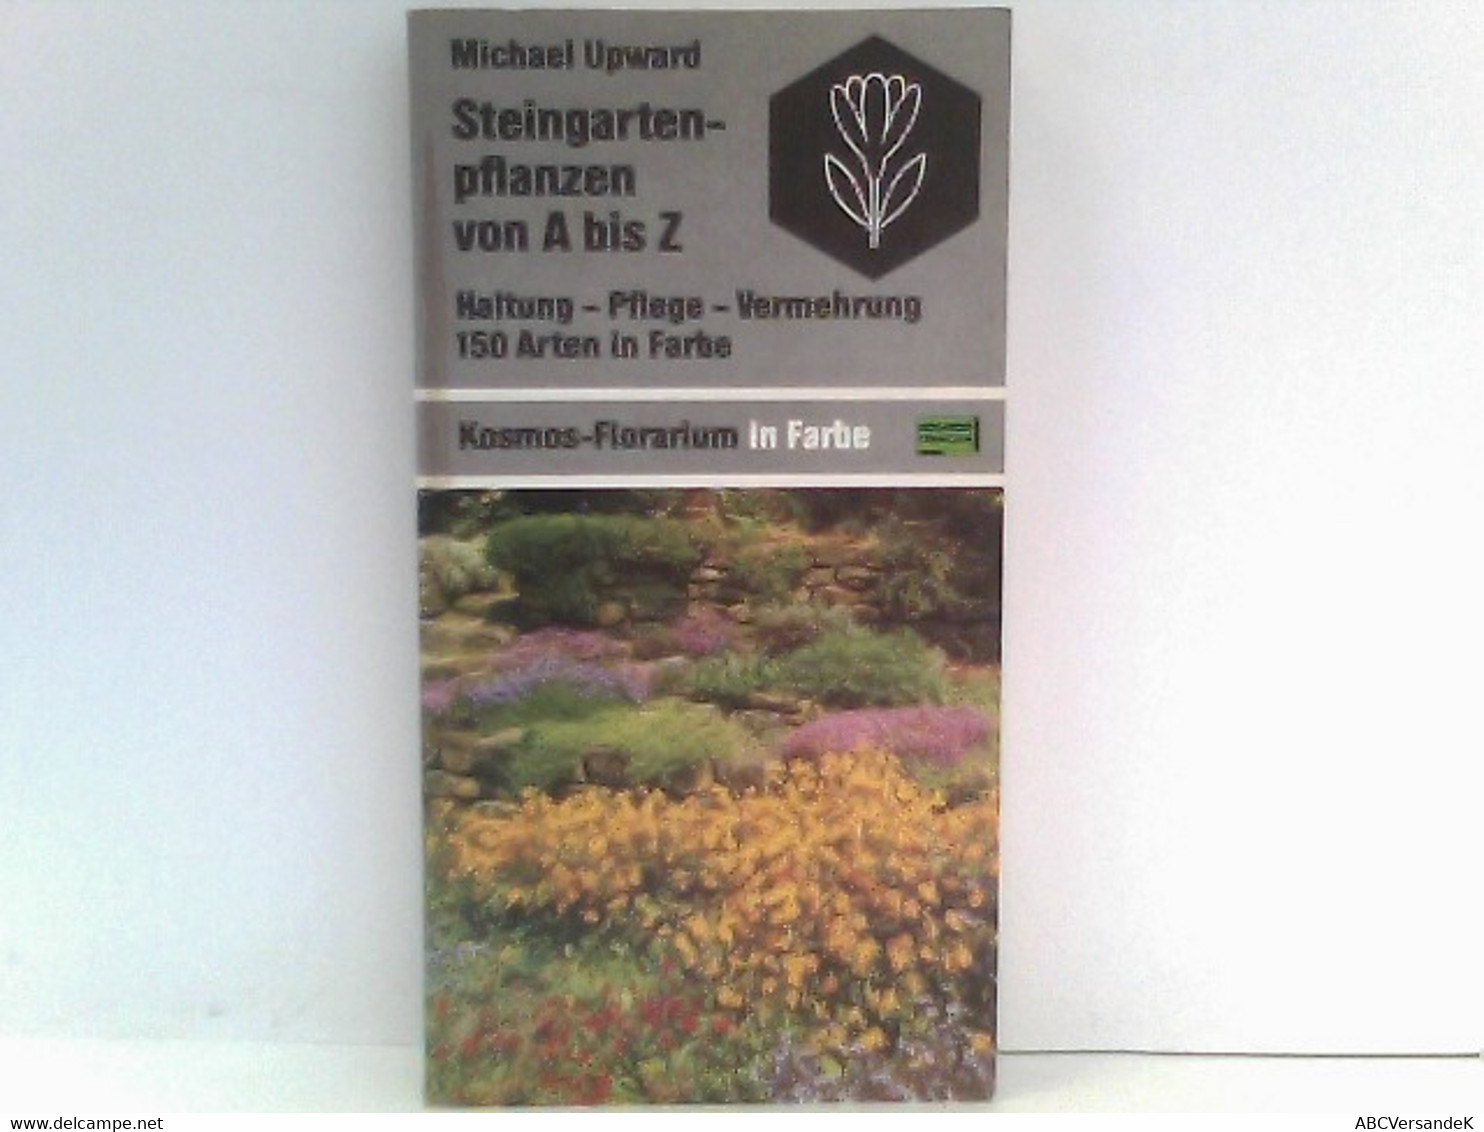 Steingartenpflanzen Von A Bis Z: Haltung - Pflege - Vermehrung. 150 Arten In Farbe (Kosmos-Florarium In Farbe) - Nature